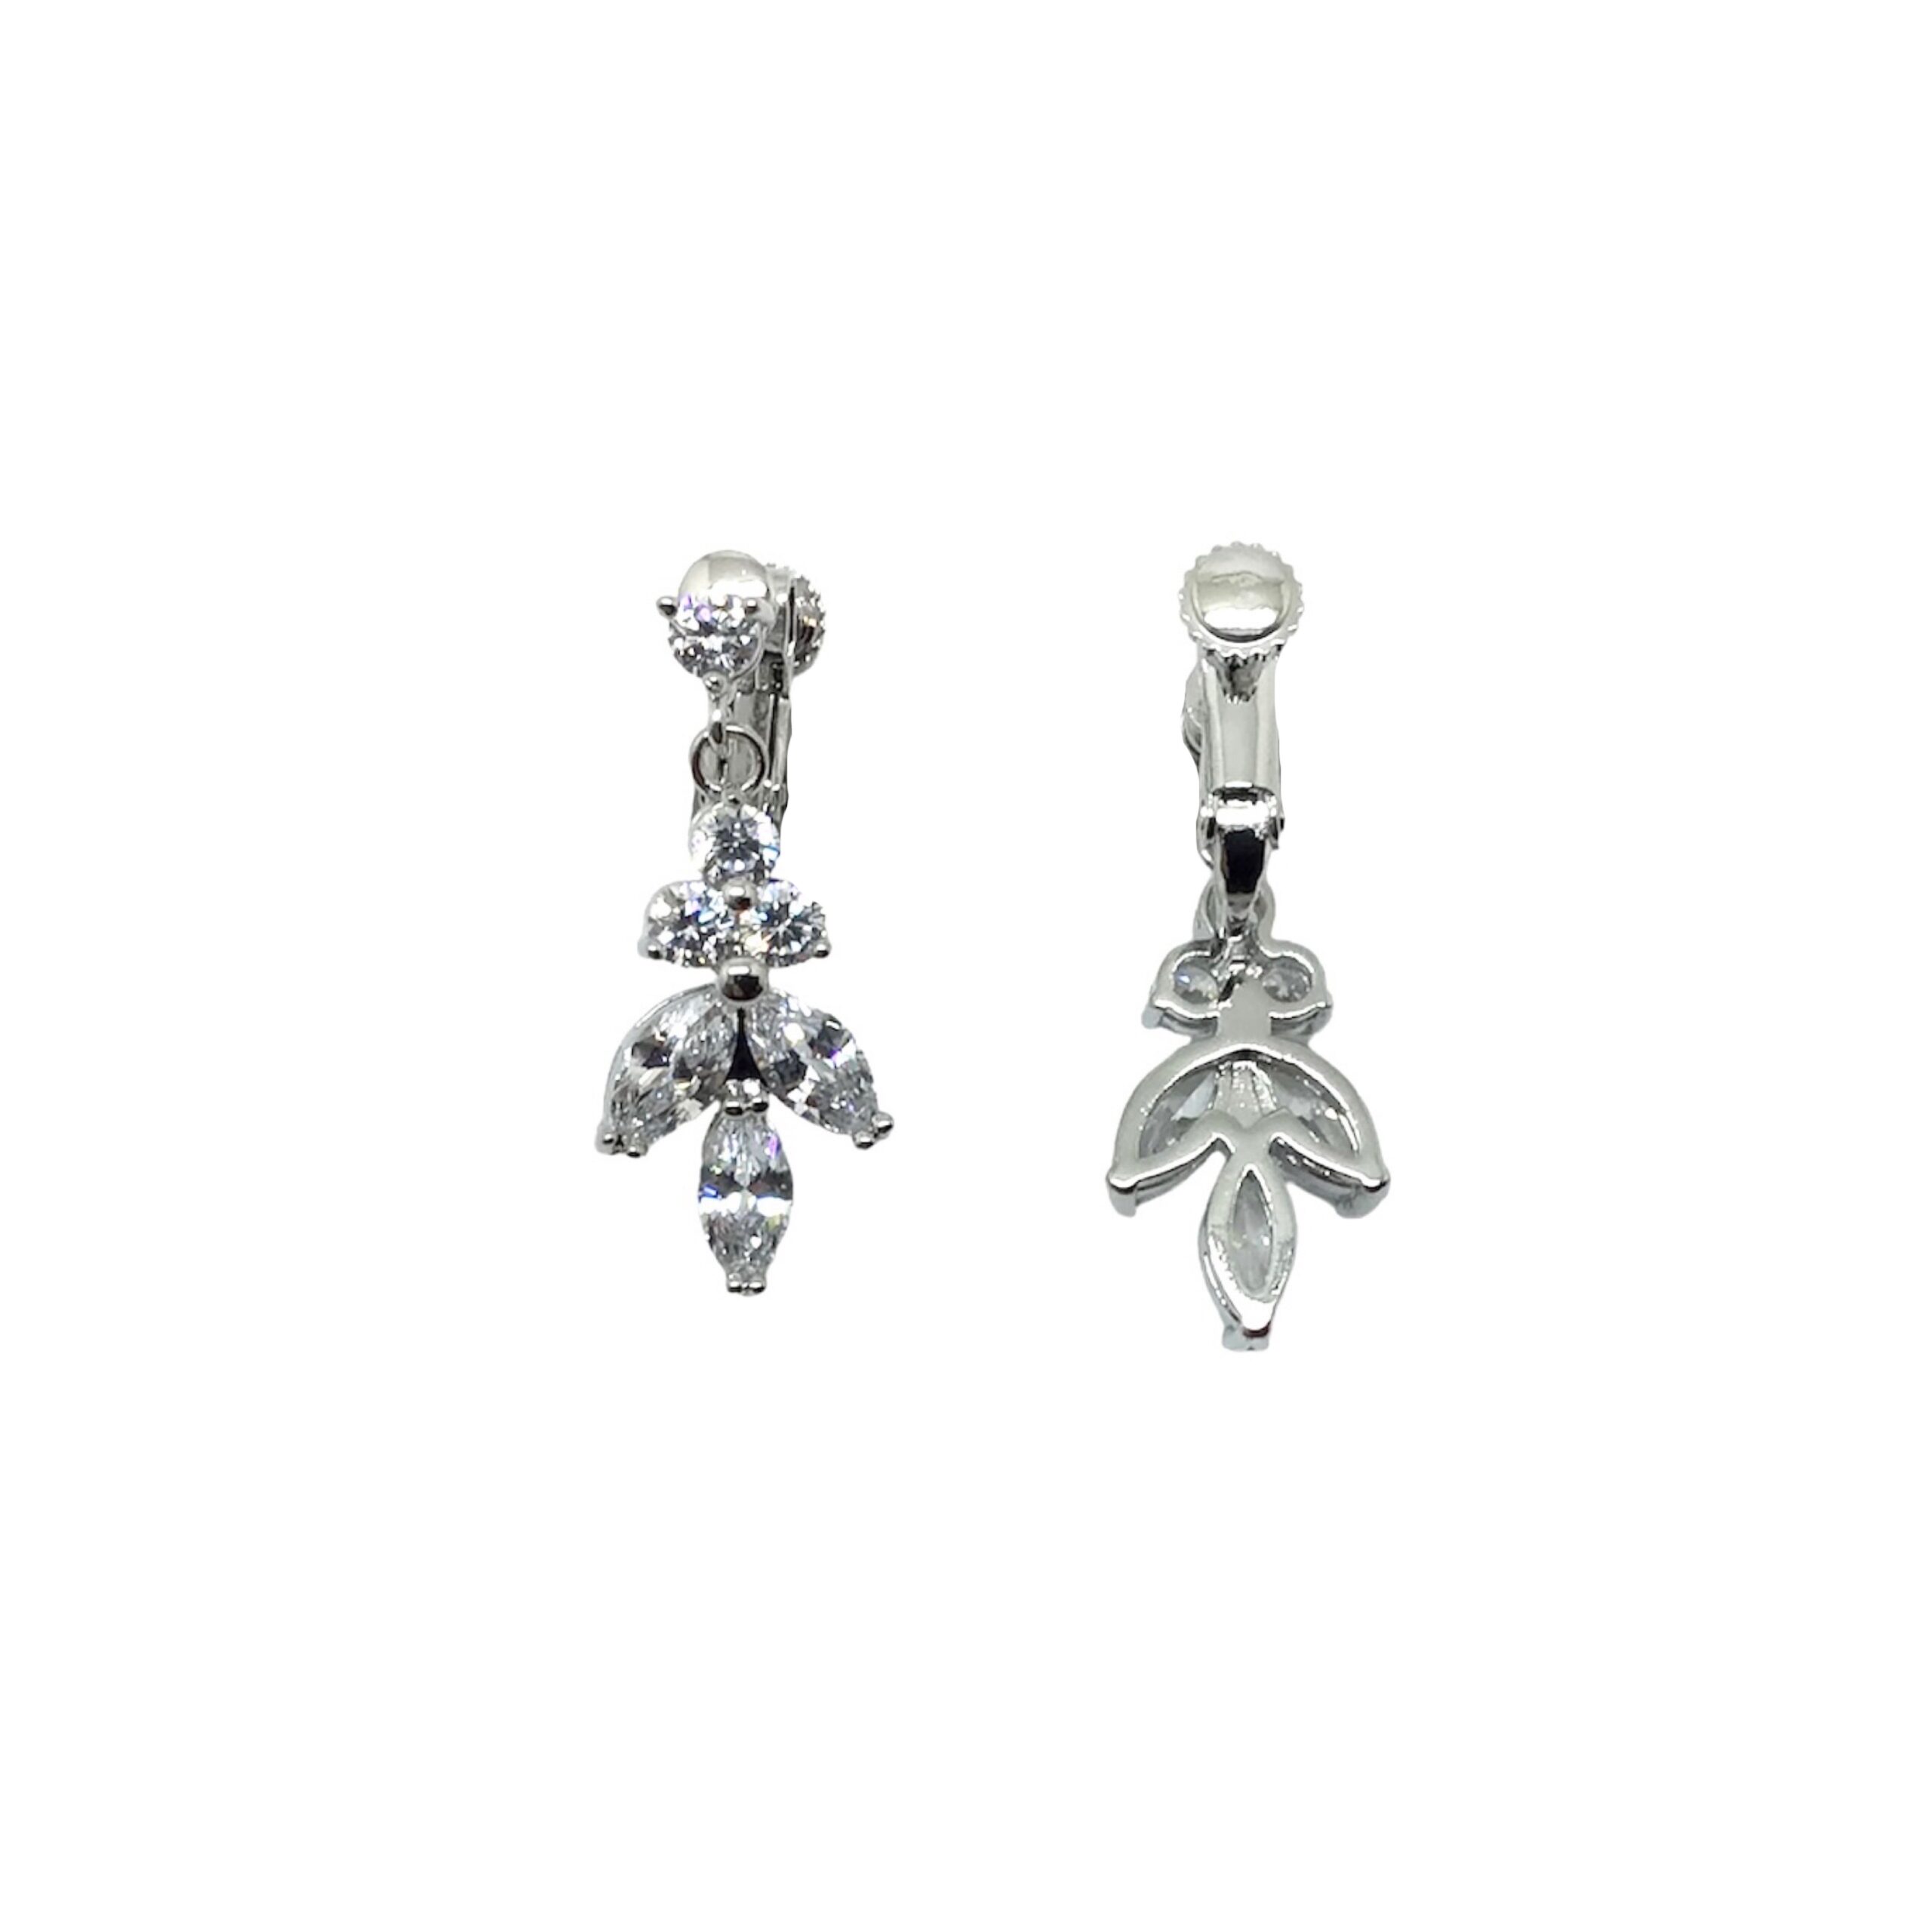 Silver Clip On Earrings|Carlotta |Jeanette Maree|Shop Online